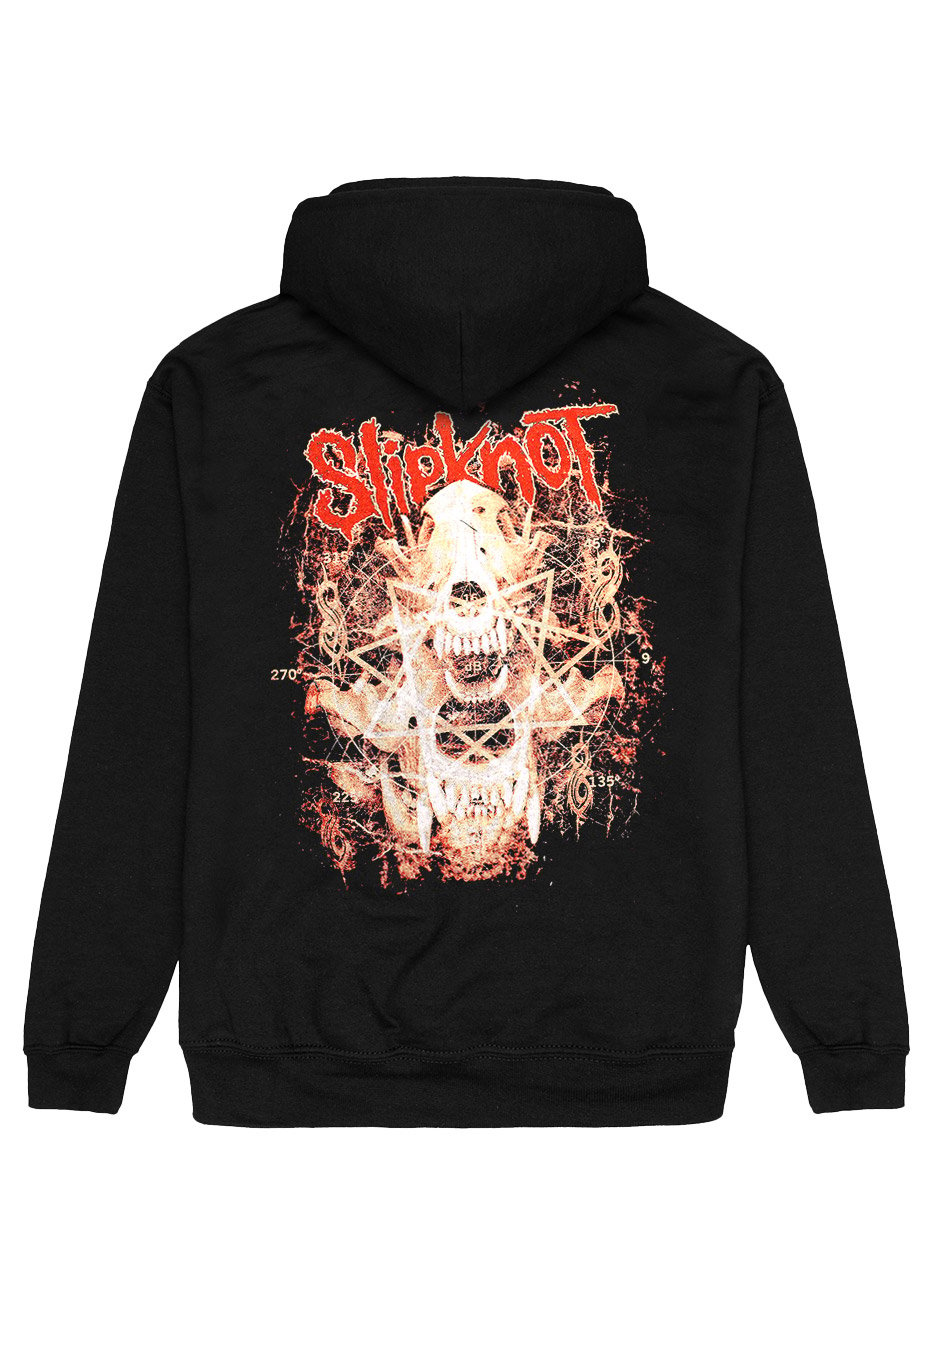 Slipknot - Skull Teeth - Zipper